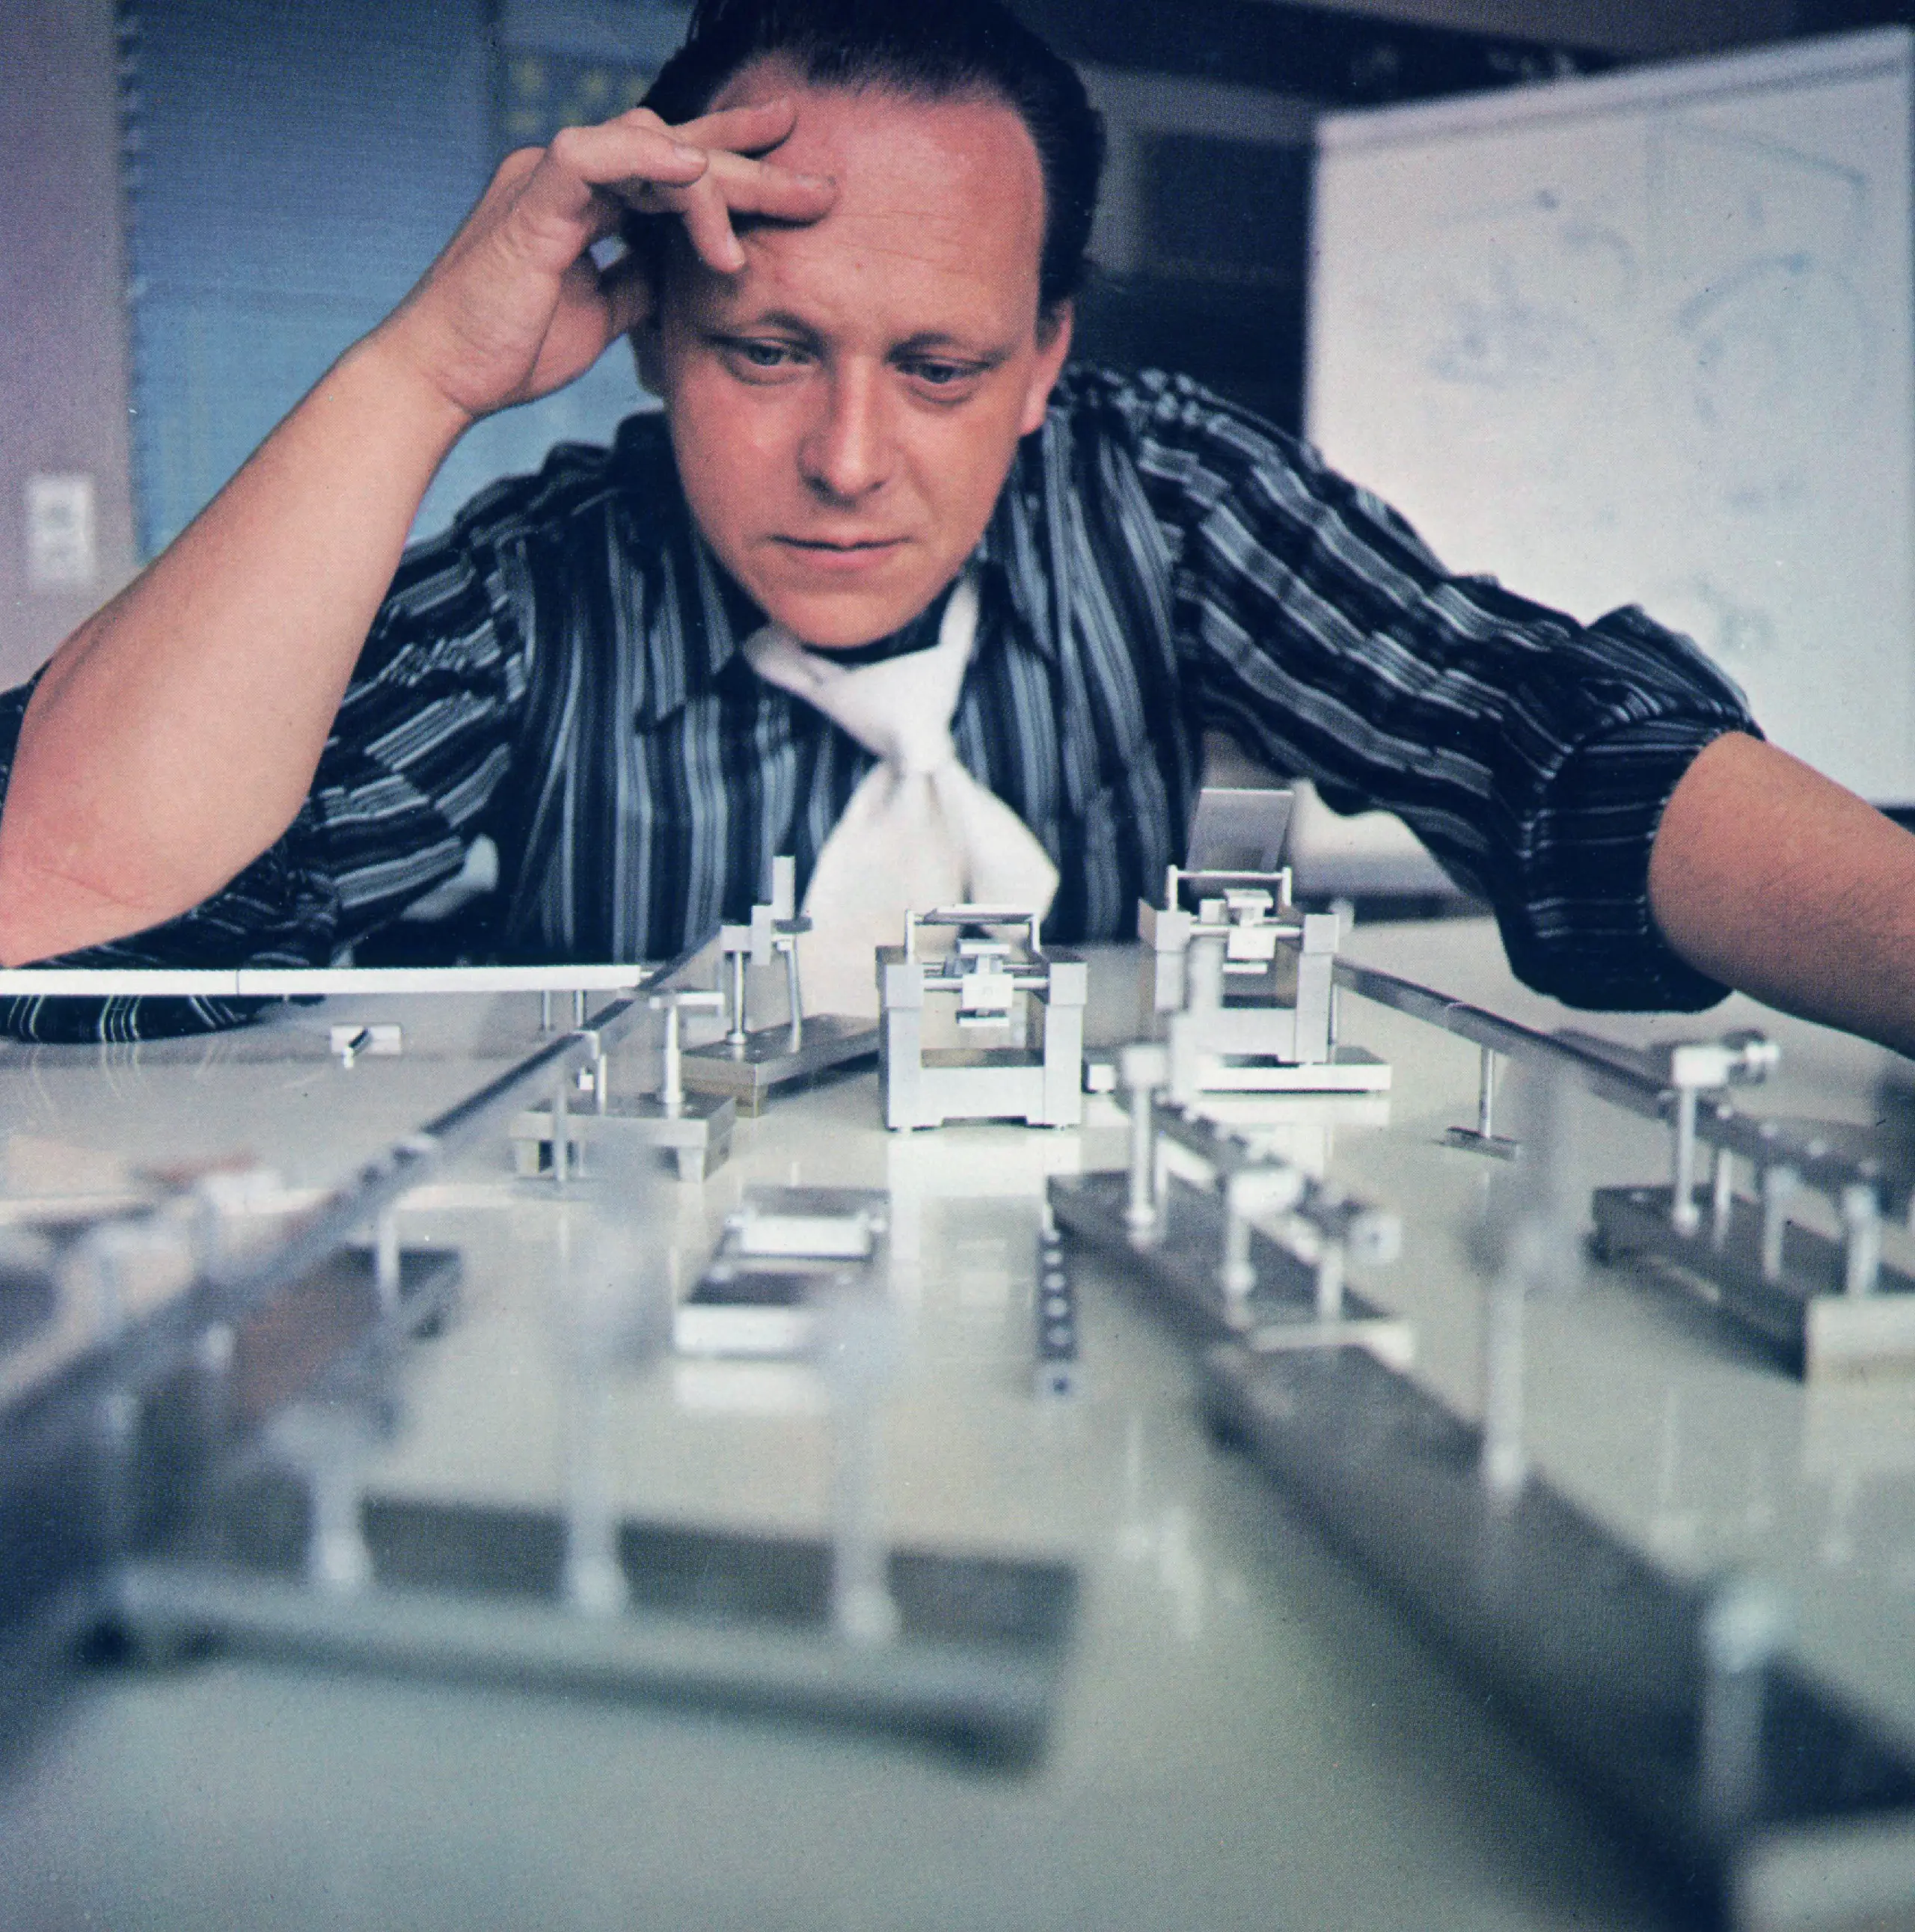 Das Bild zeigt ein Mann, der über eine Konstruktion nachdenkt, welche auf dem Tisch liegt.